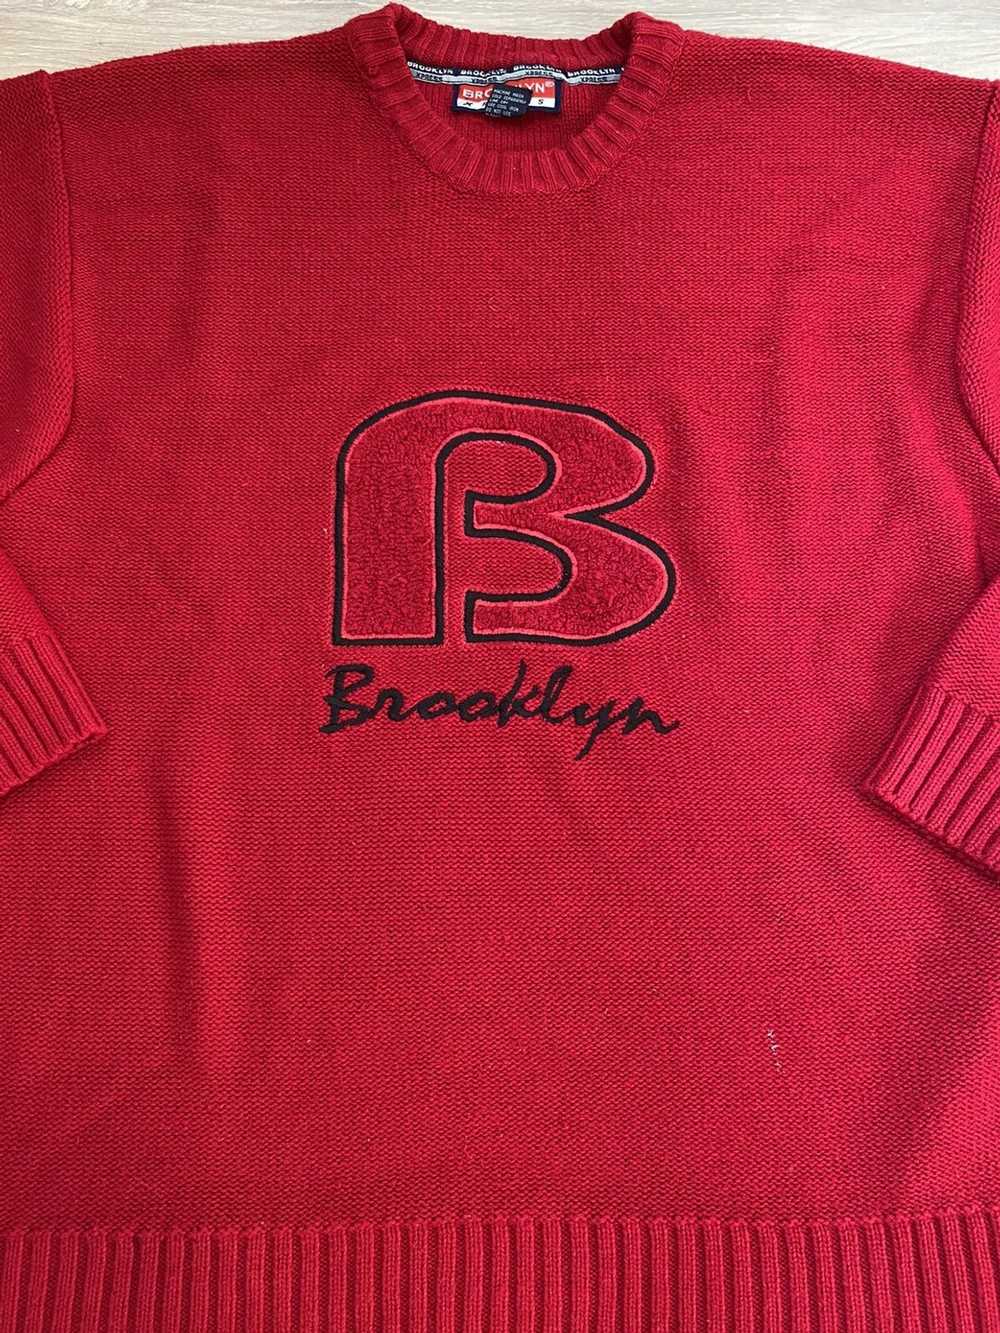 Brooklyn Xpress Brooklyn Xpress Sweater - image 2